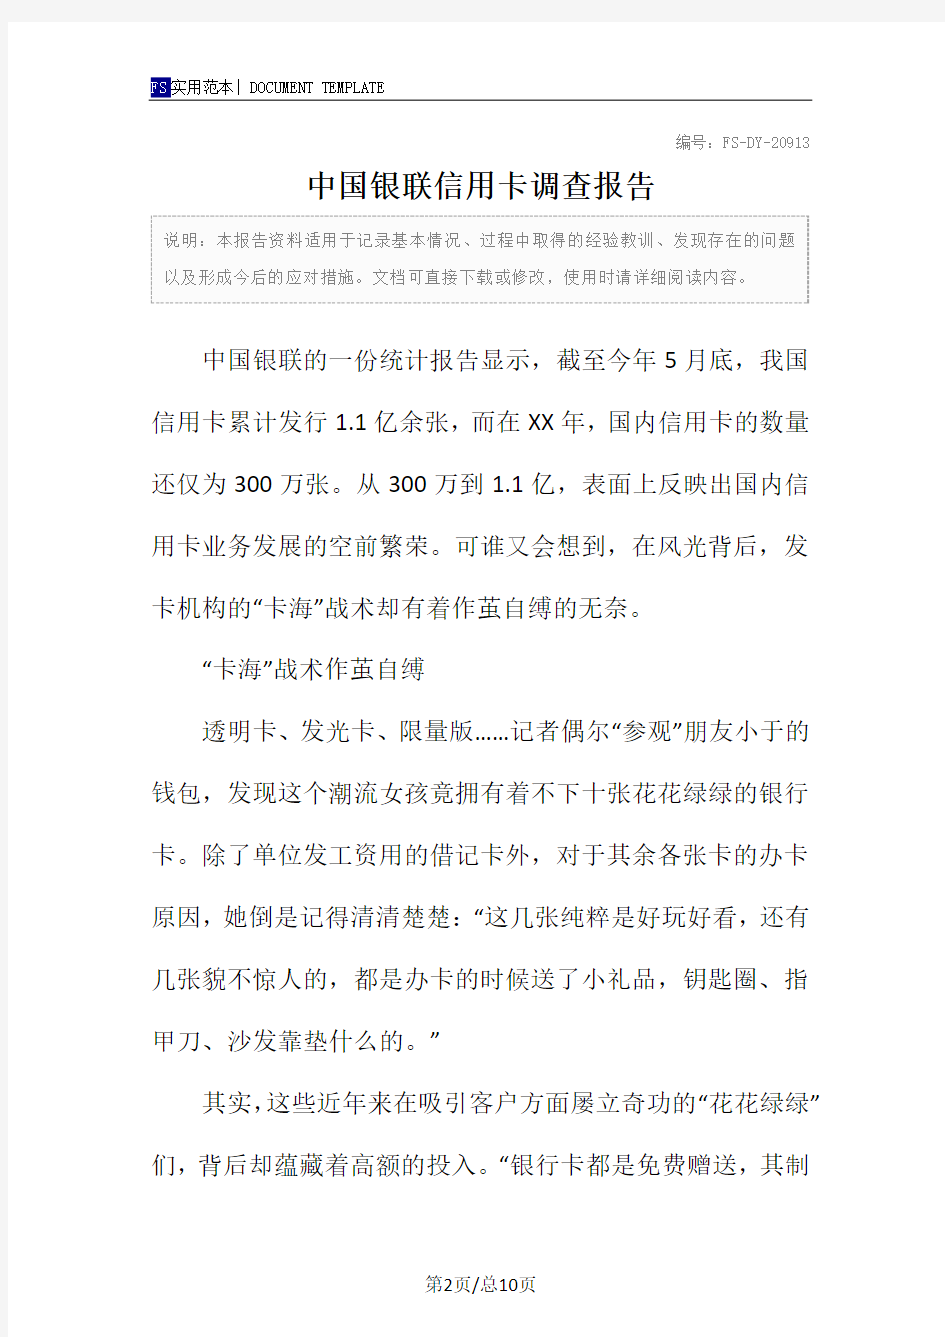 中国银联信用卡调查报告范本